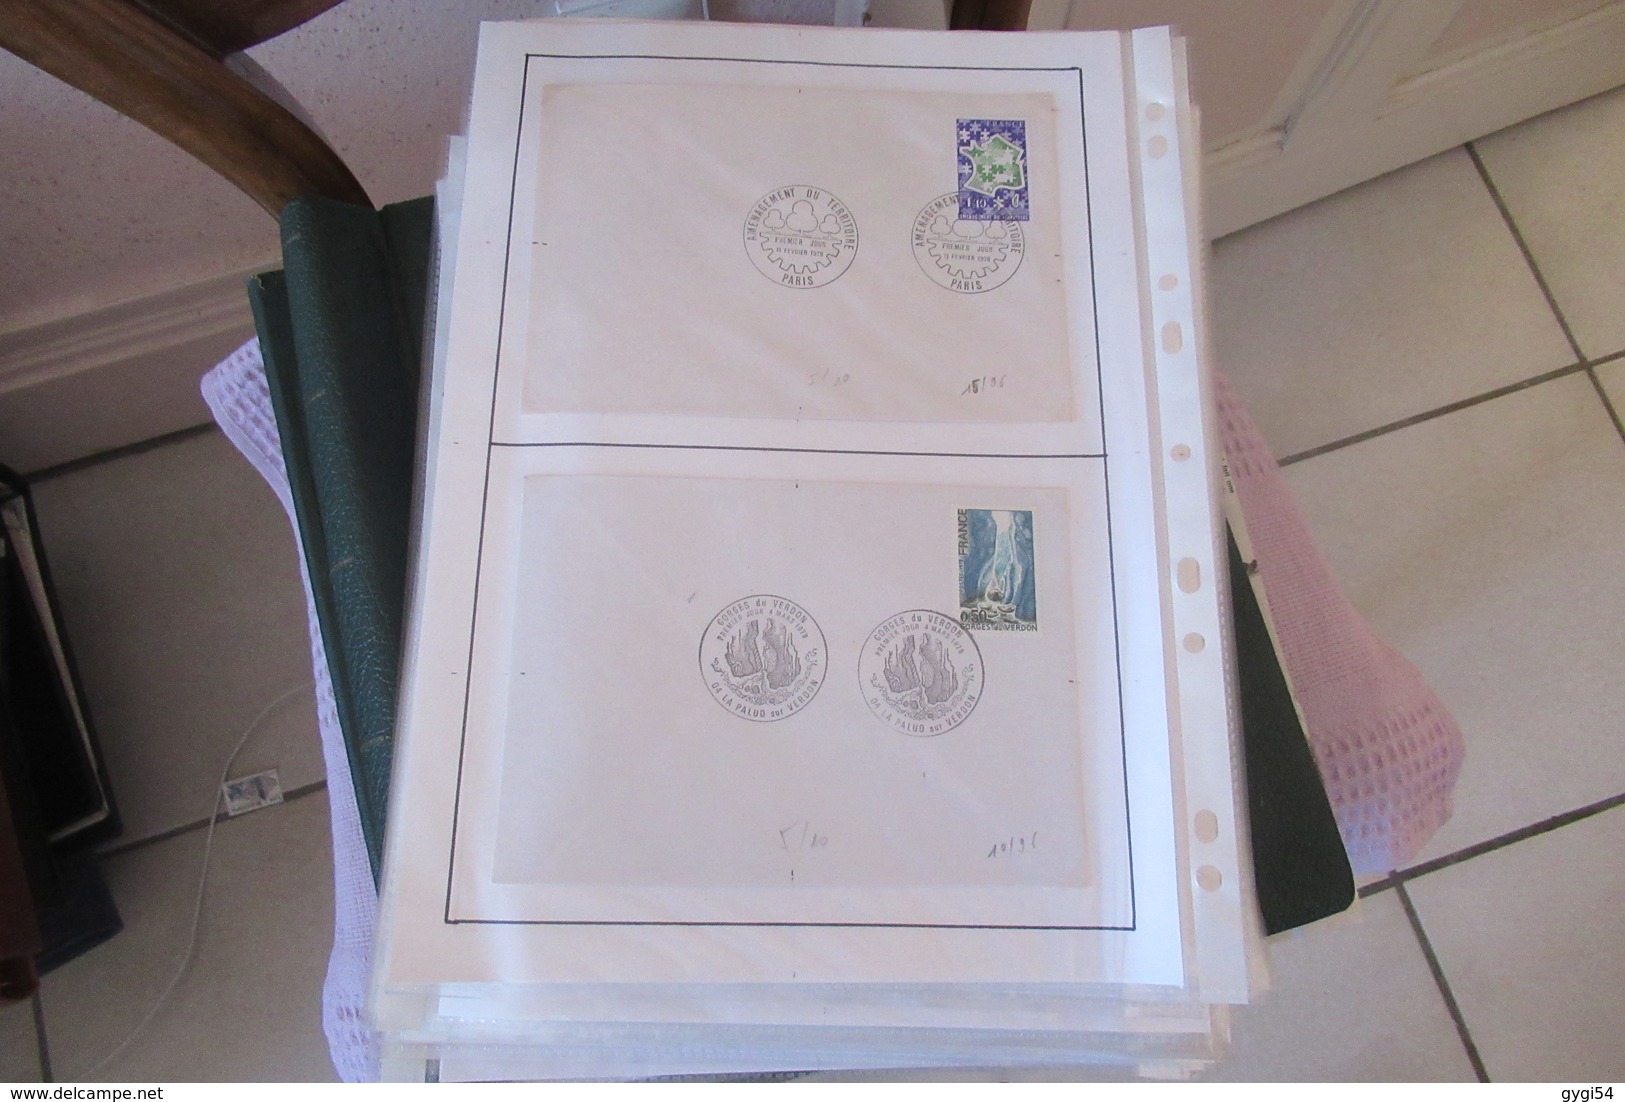 France timbres Oblitérés avec cachet sur lettre  de 1976 - 1982      73  scans